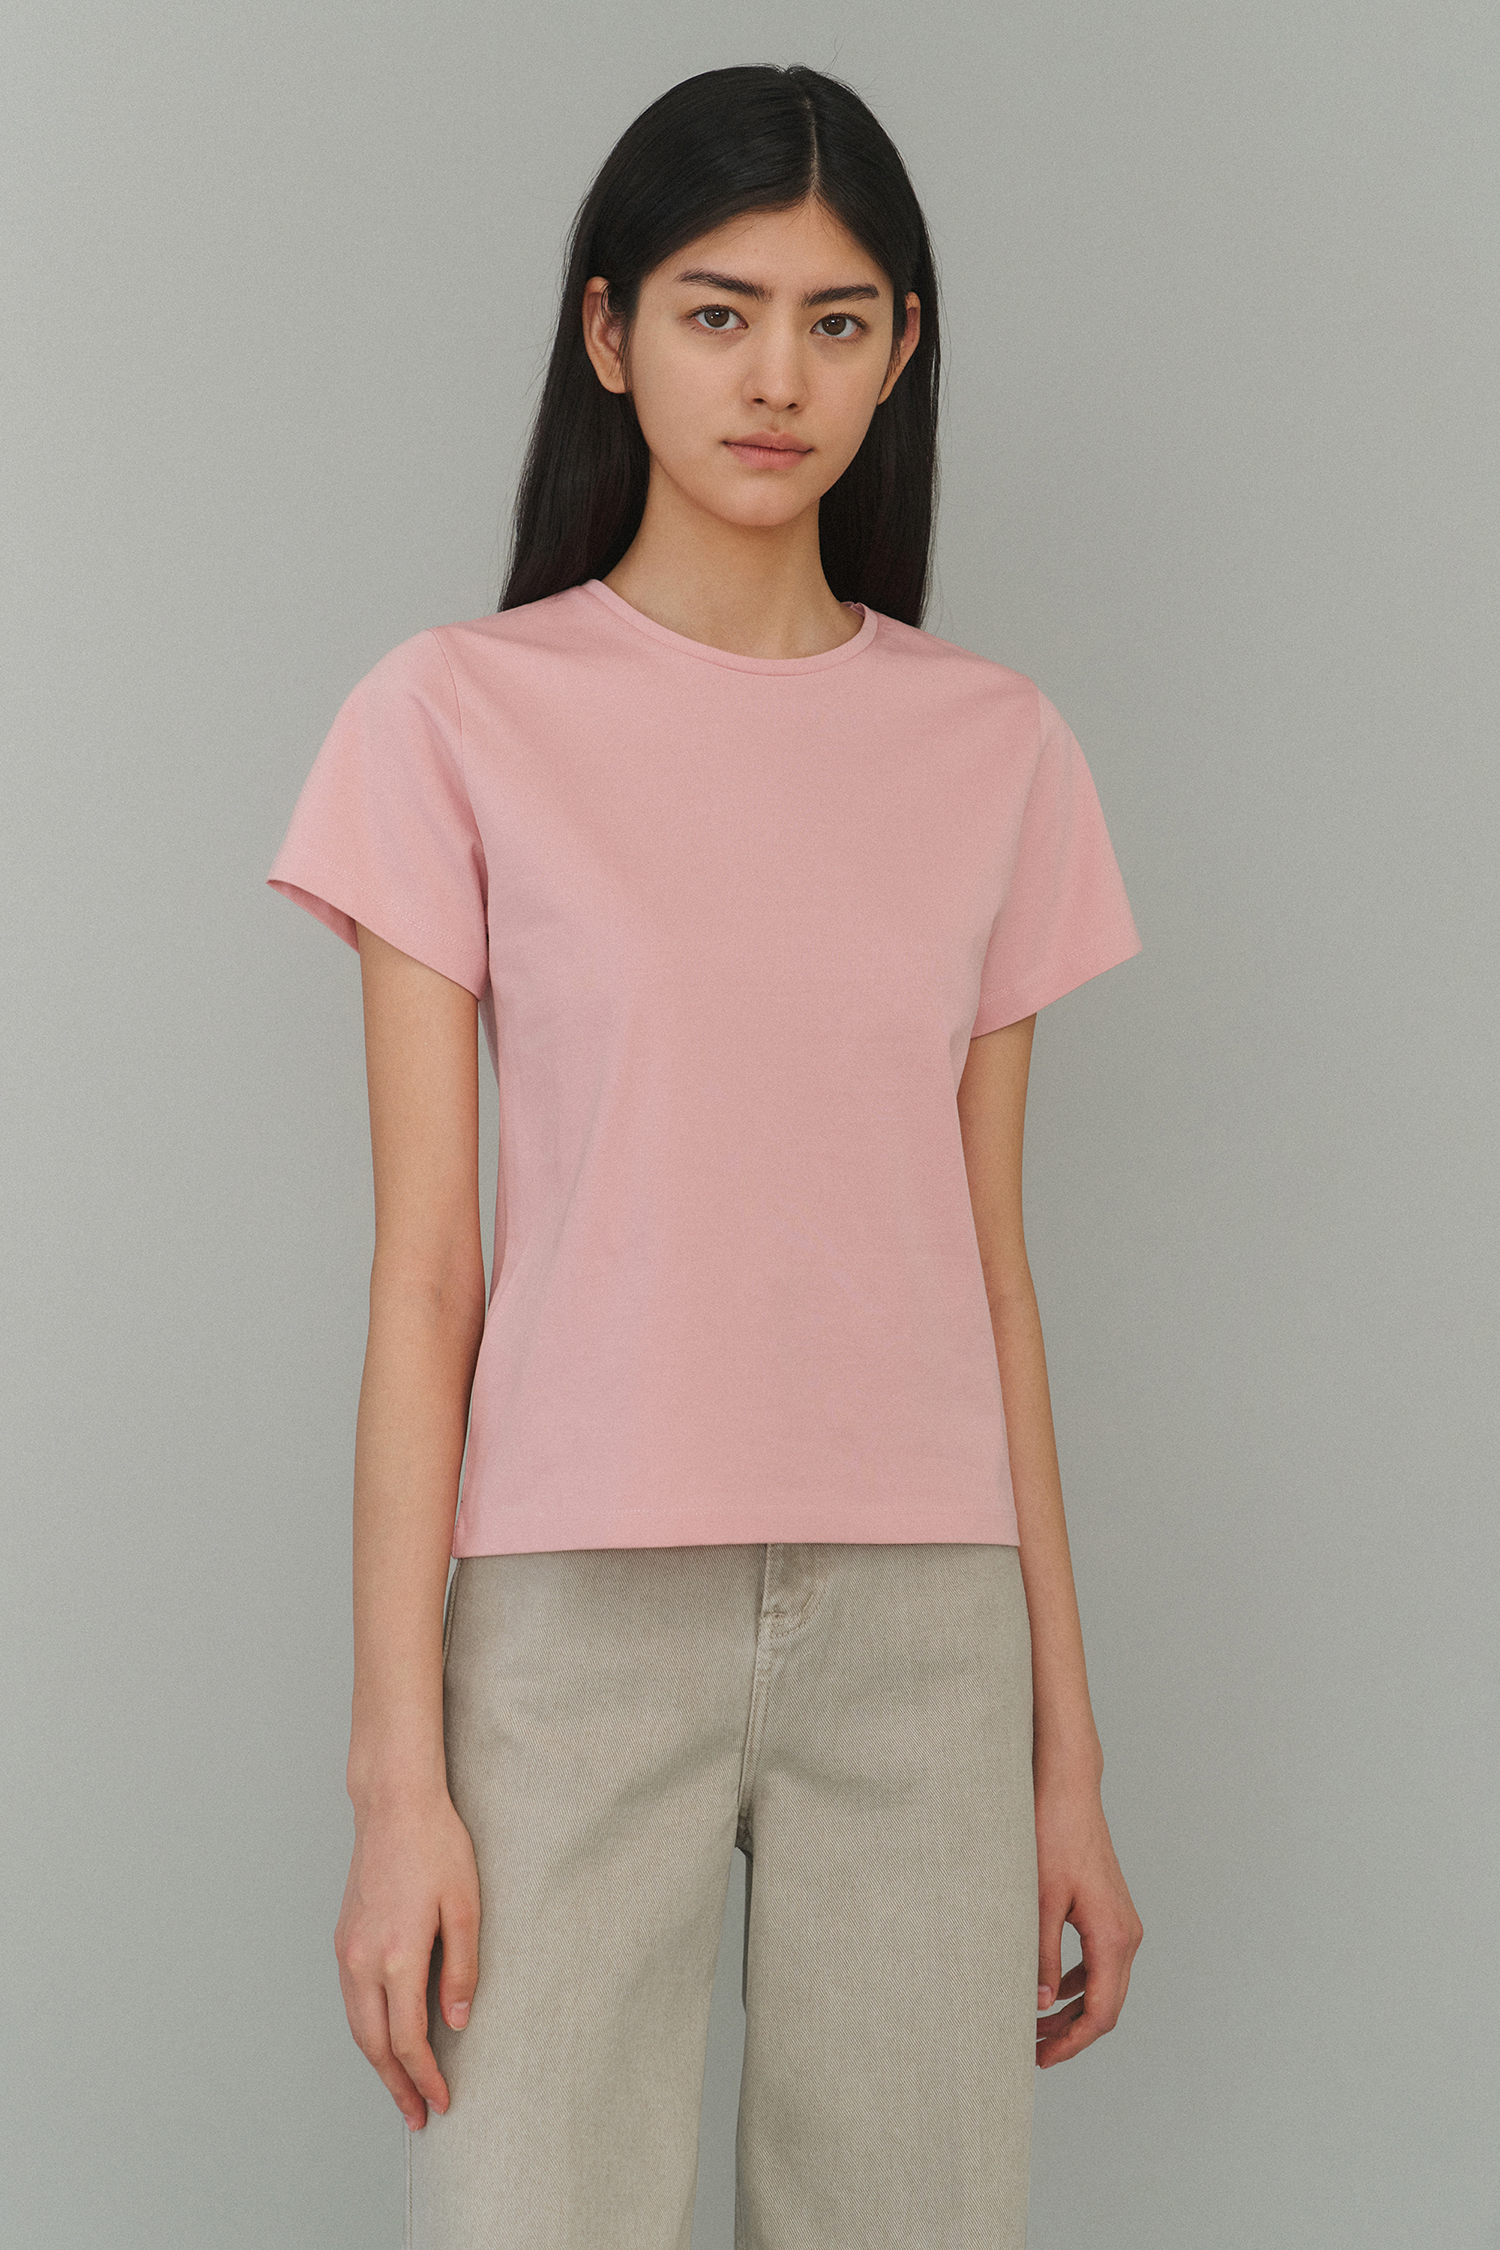 Silket cotton t-shirts (pink)